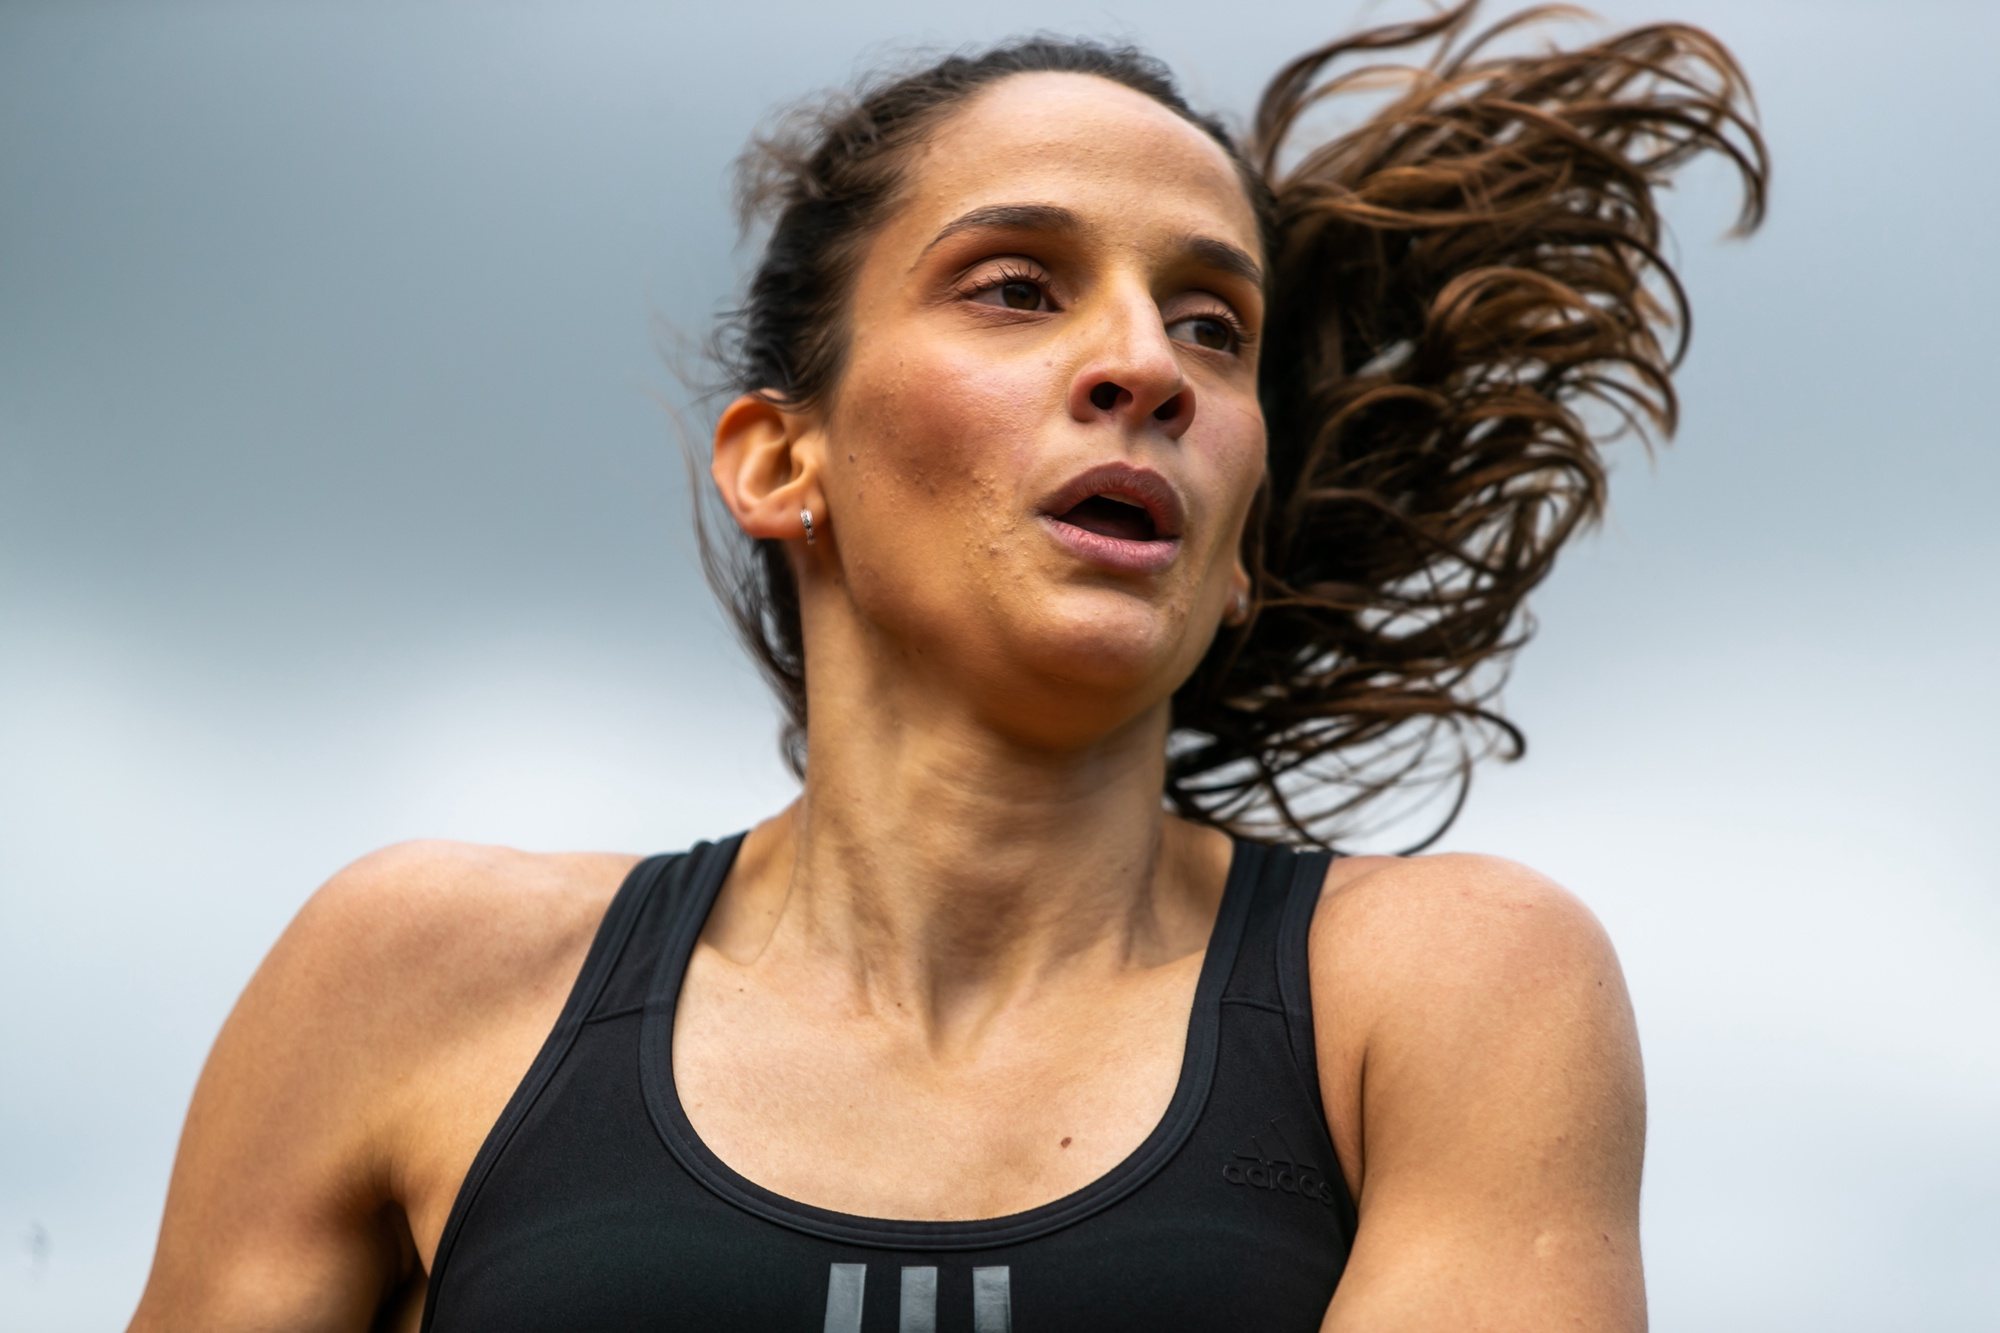 A atleta corredora dos 400 metros, Cátia Azevedo, regressa aos treinos dois meses depois de devido à situação de pandemia de covid-19, no CAR - Centro de Alto Rendimento do Jamor, Oeiras, 12 de maio de 2020. (ACOMPANHA TEXTO DE 14 DE MAIO DE 2020). JOSÉ SENA GOULÃO/LUSA.